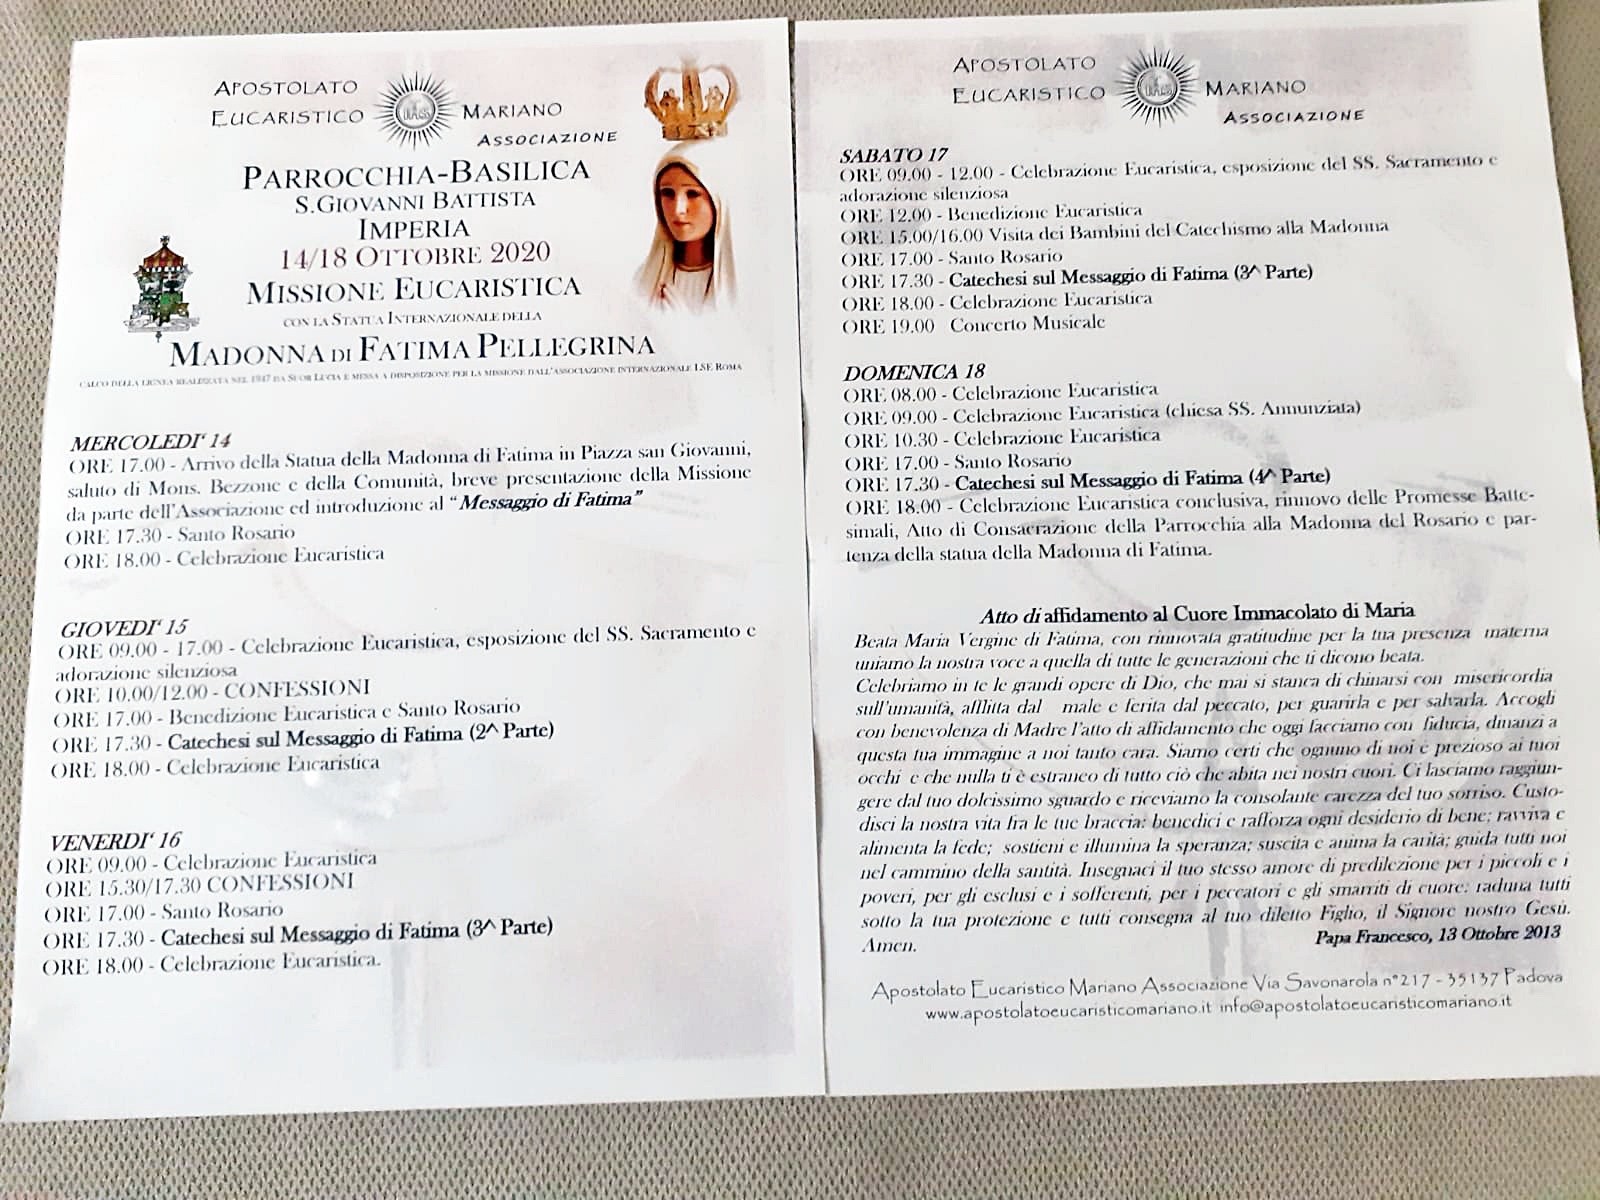 Madonna di fatima Imperia San Giovanni ottobre 2020 programma